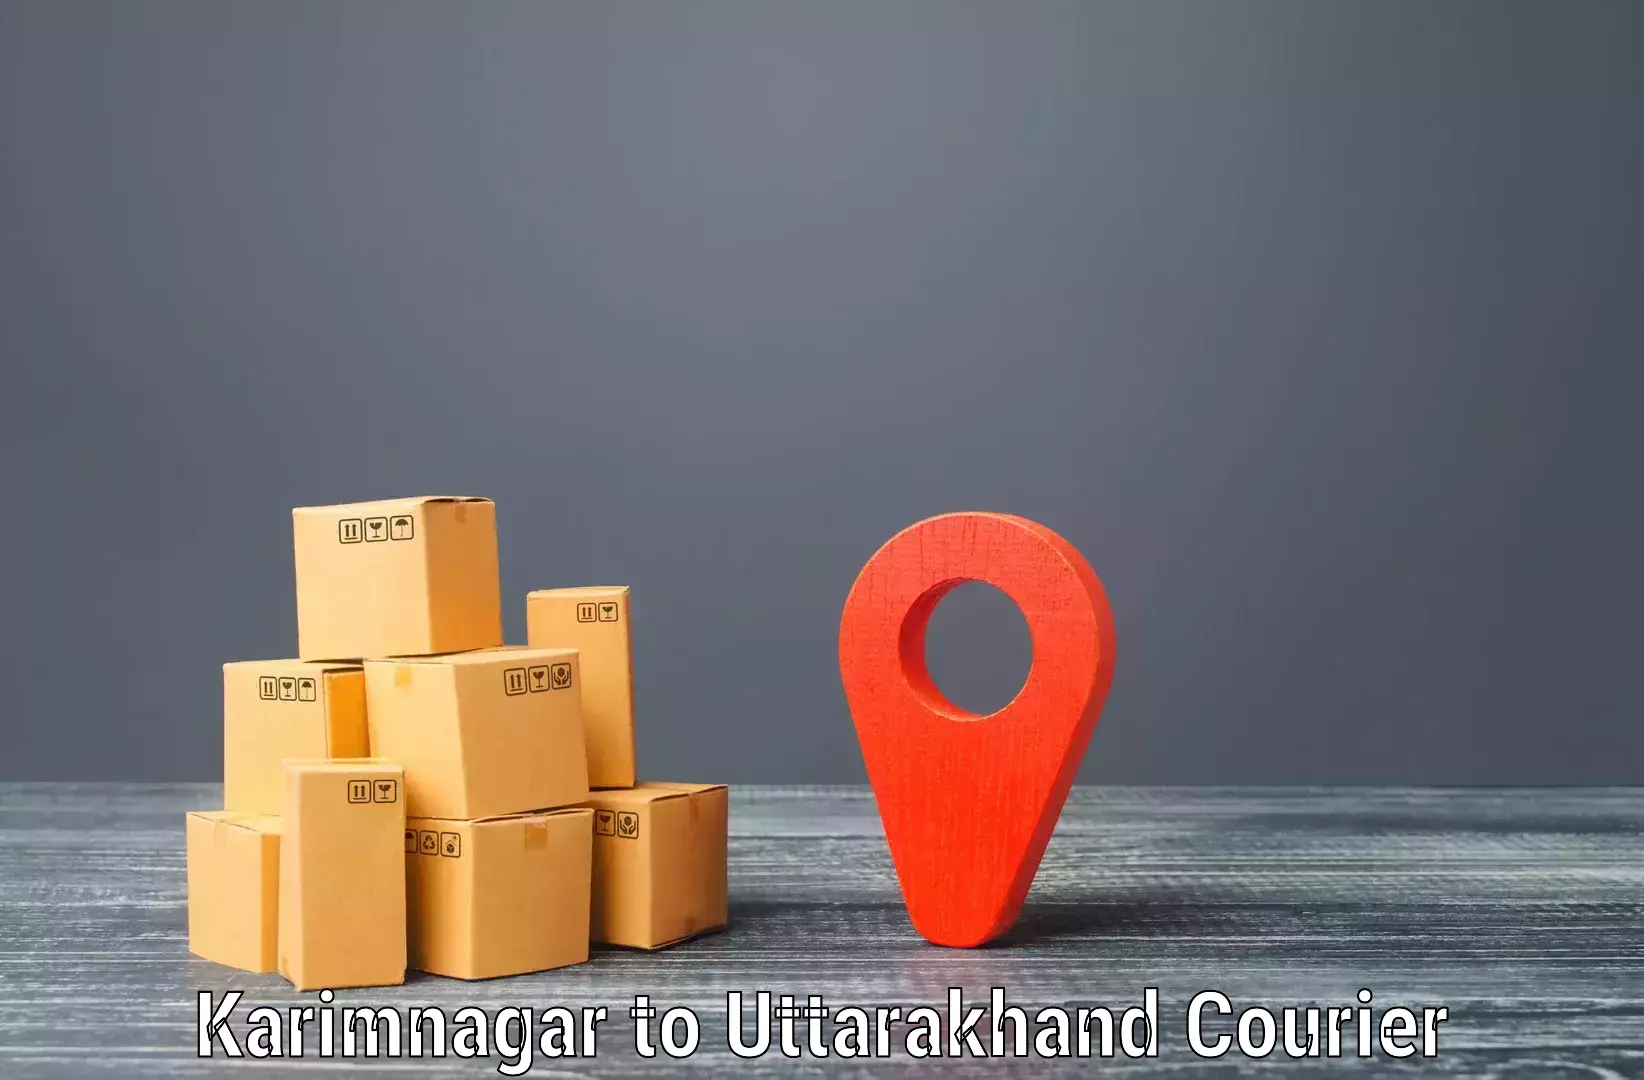 Next-day freight services Karimnagar to Uttarakhand